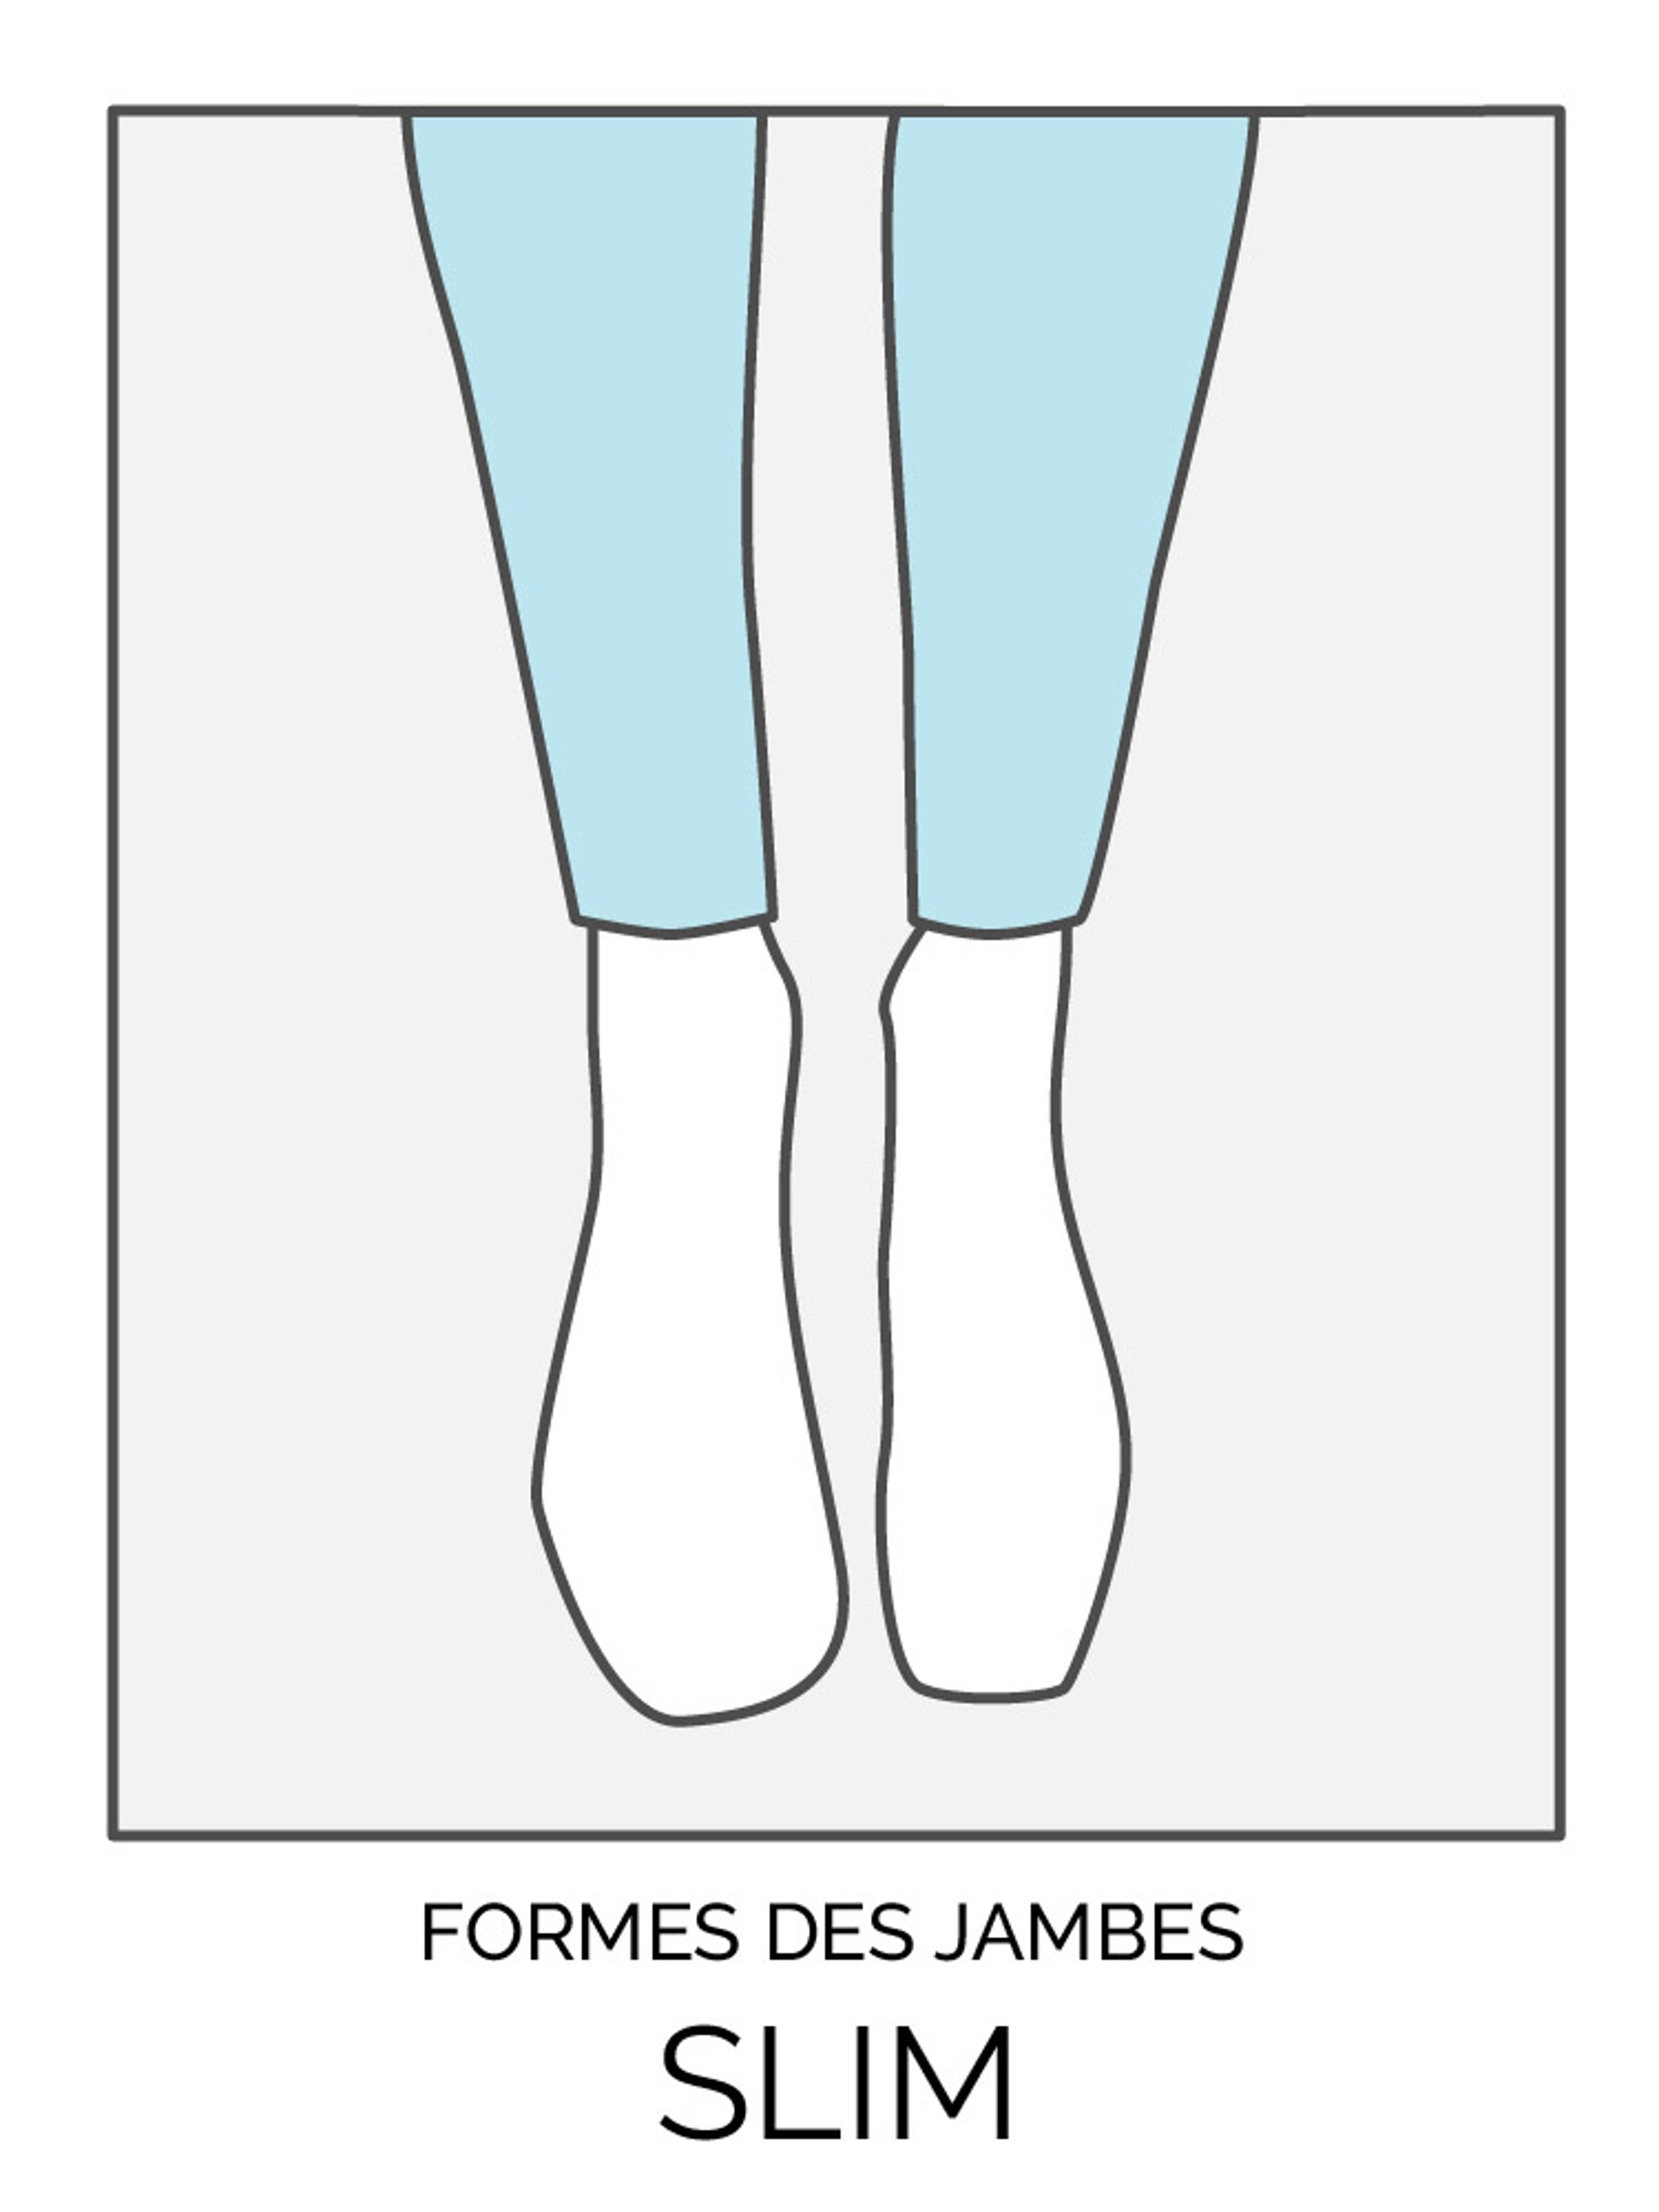 Formes des jambes: slim